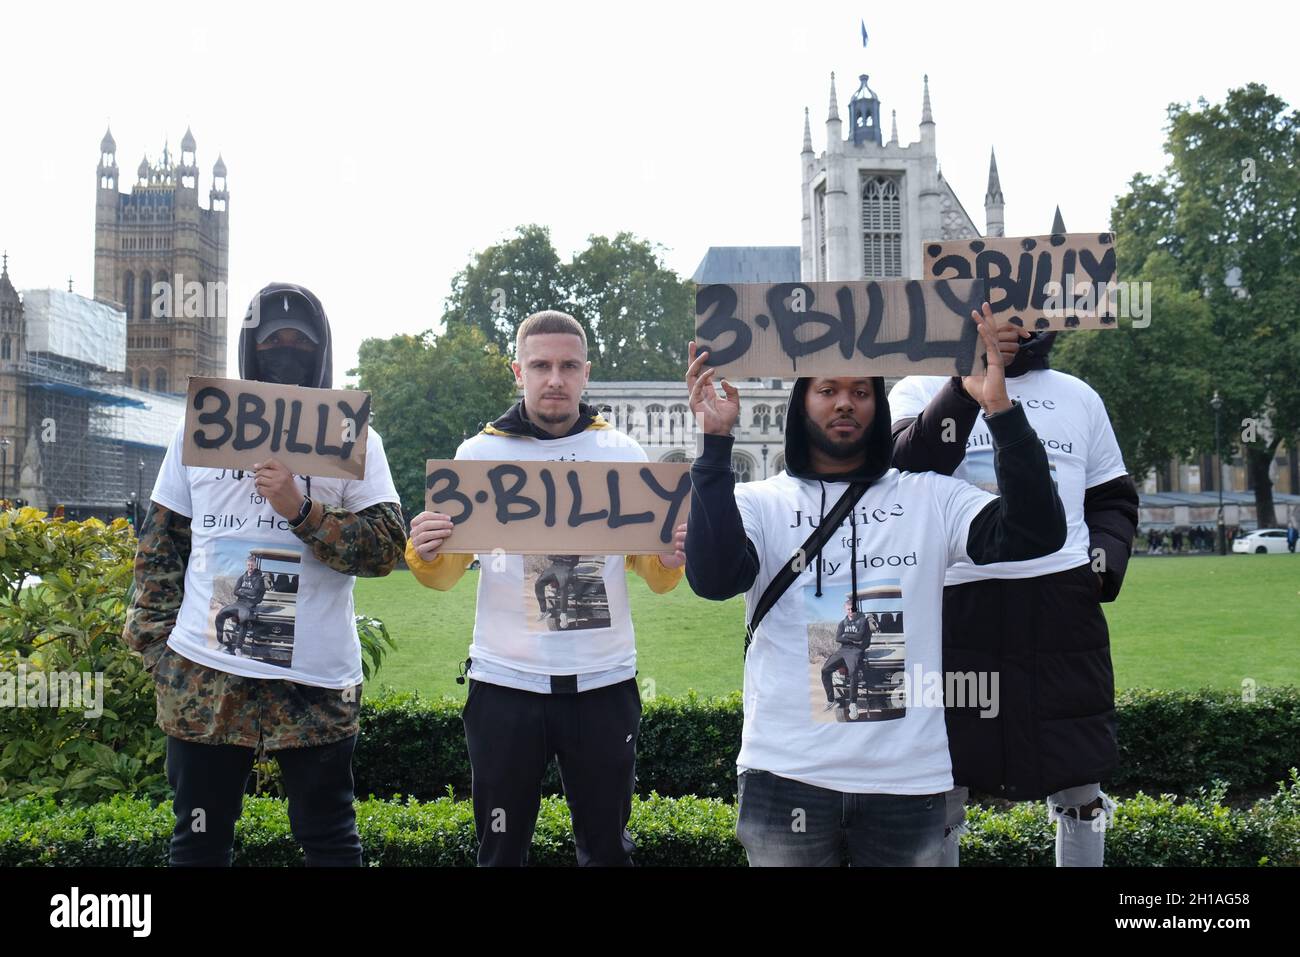 London, Großbritannien. Familie und Freunde des britischen Mannes Billy Hood versammeln sich, um gegen seine 25-jährige Haftstrafe wegen des Besitzes von CBD-Vape-Öl in Dubai zu protestieren. Stockfoto